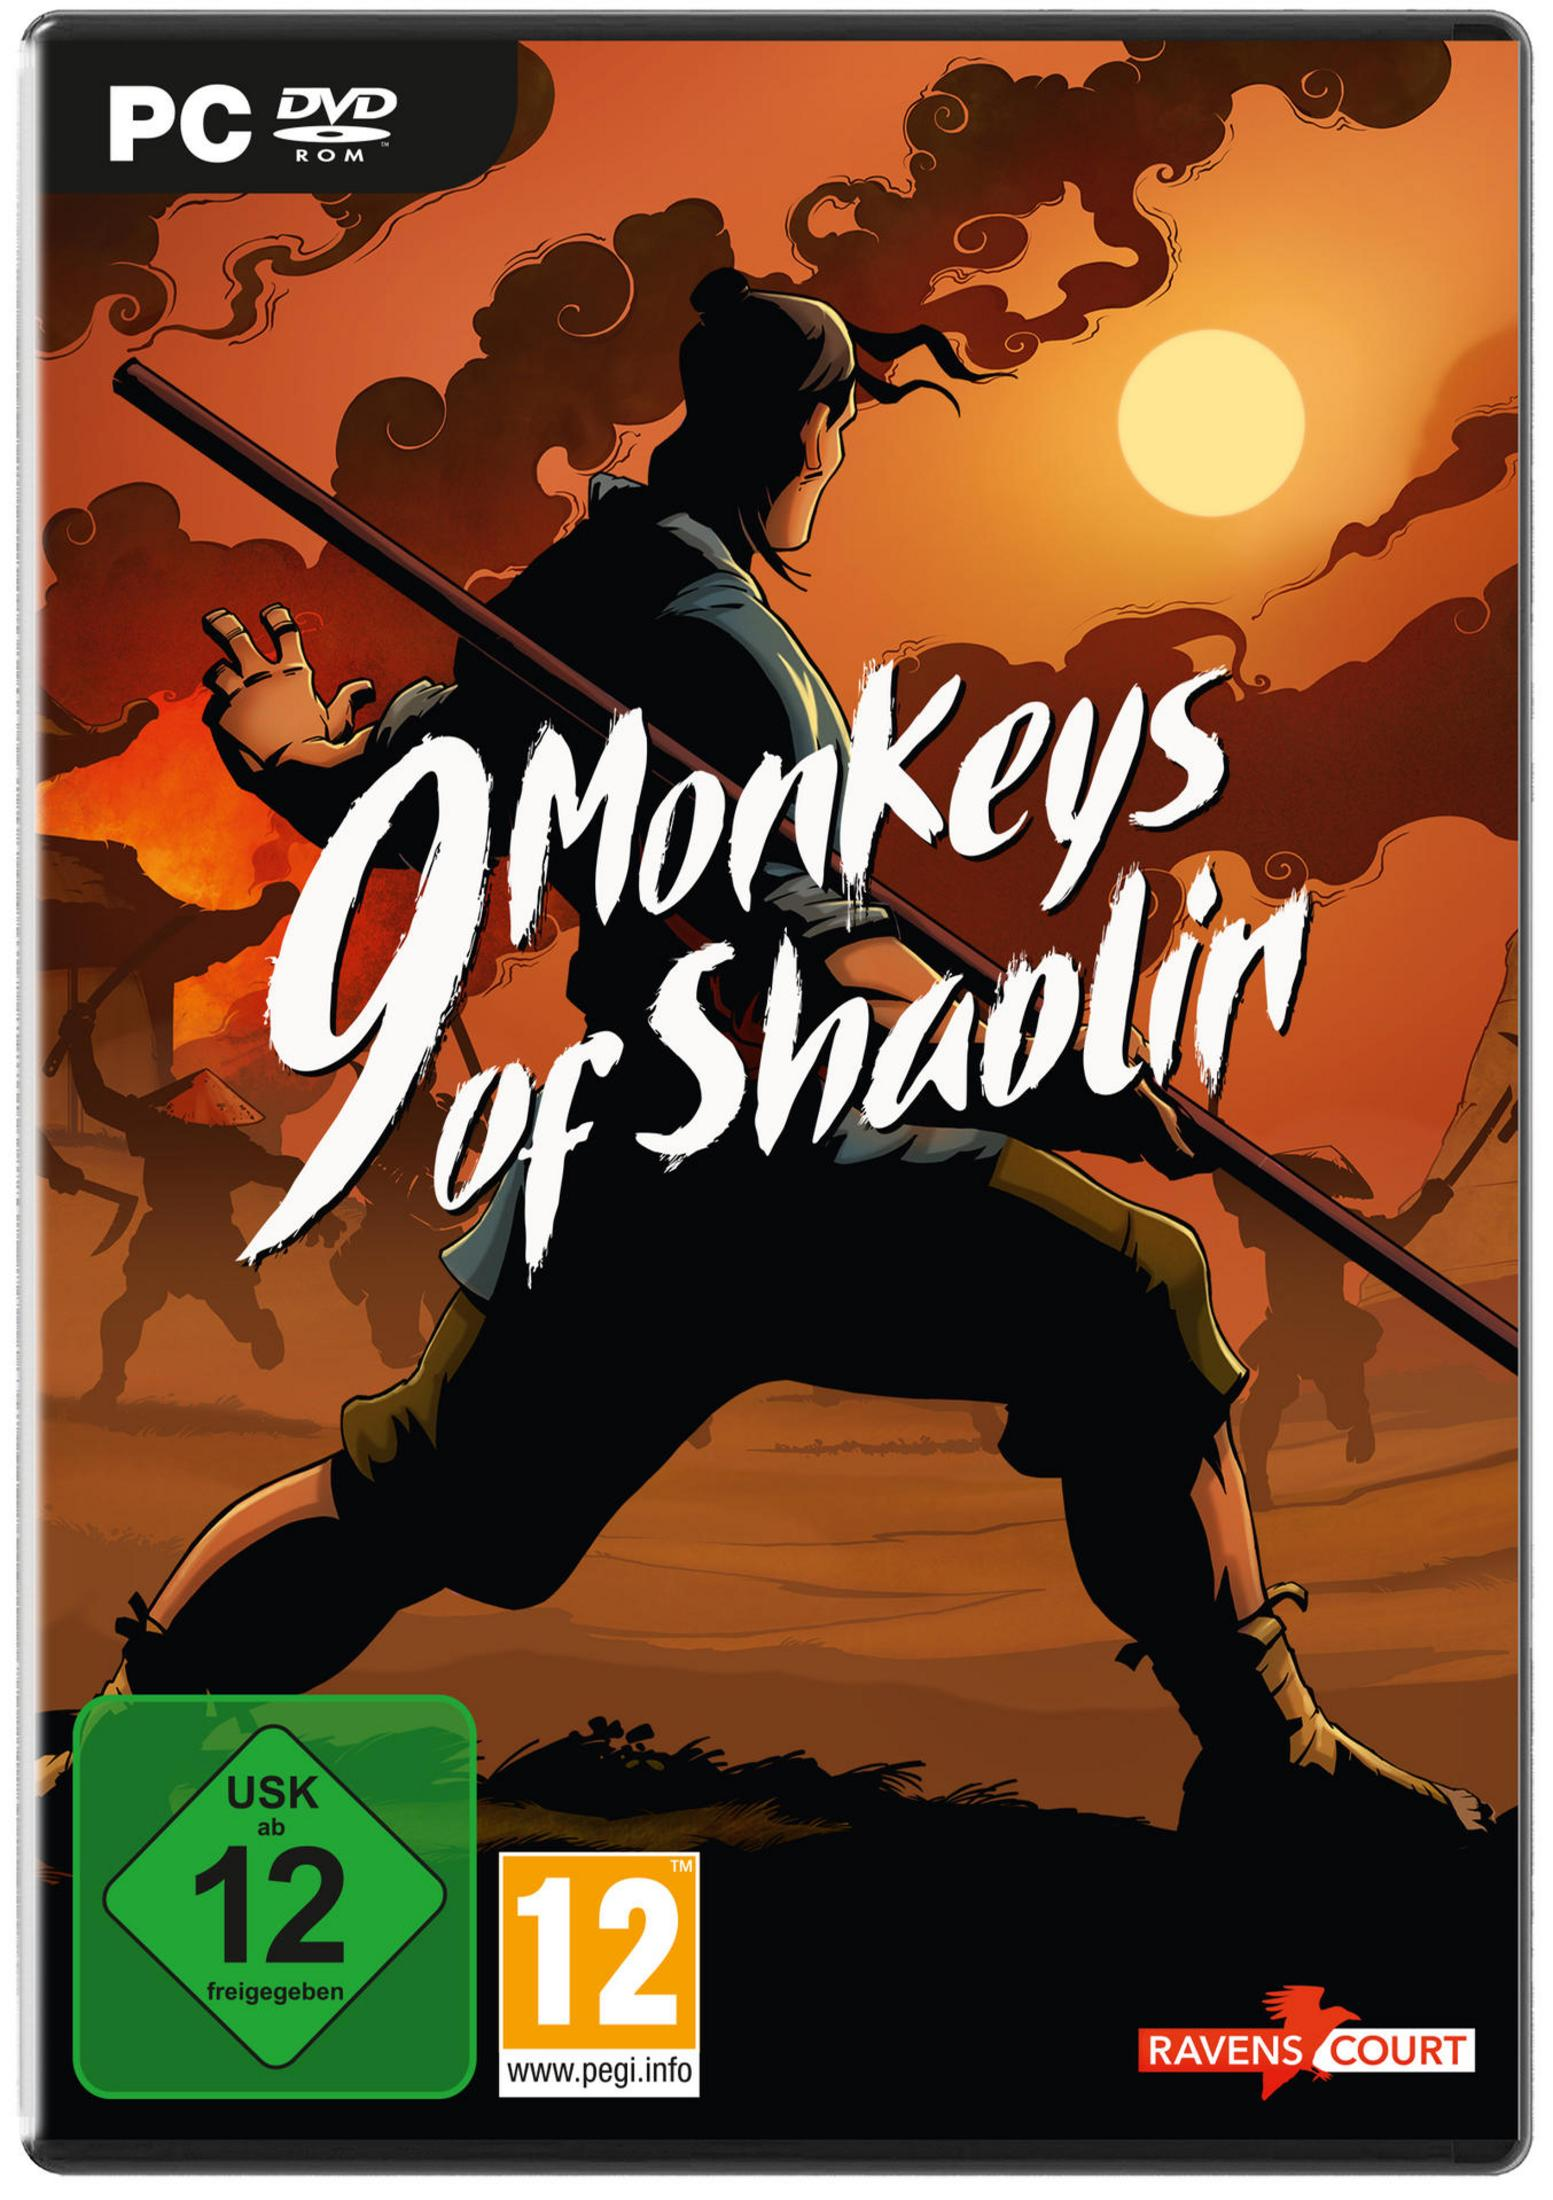 9 Monkeys [PC] - of Shaolin